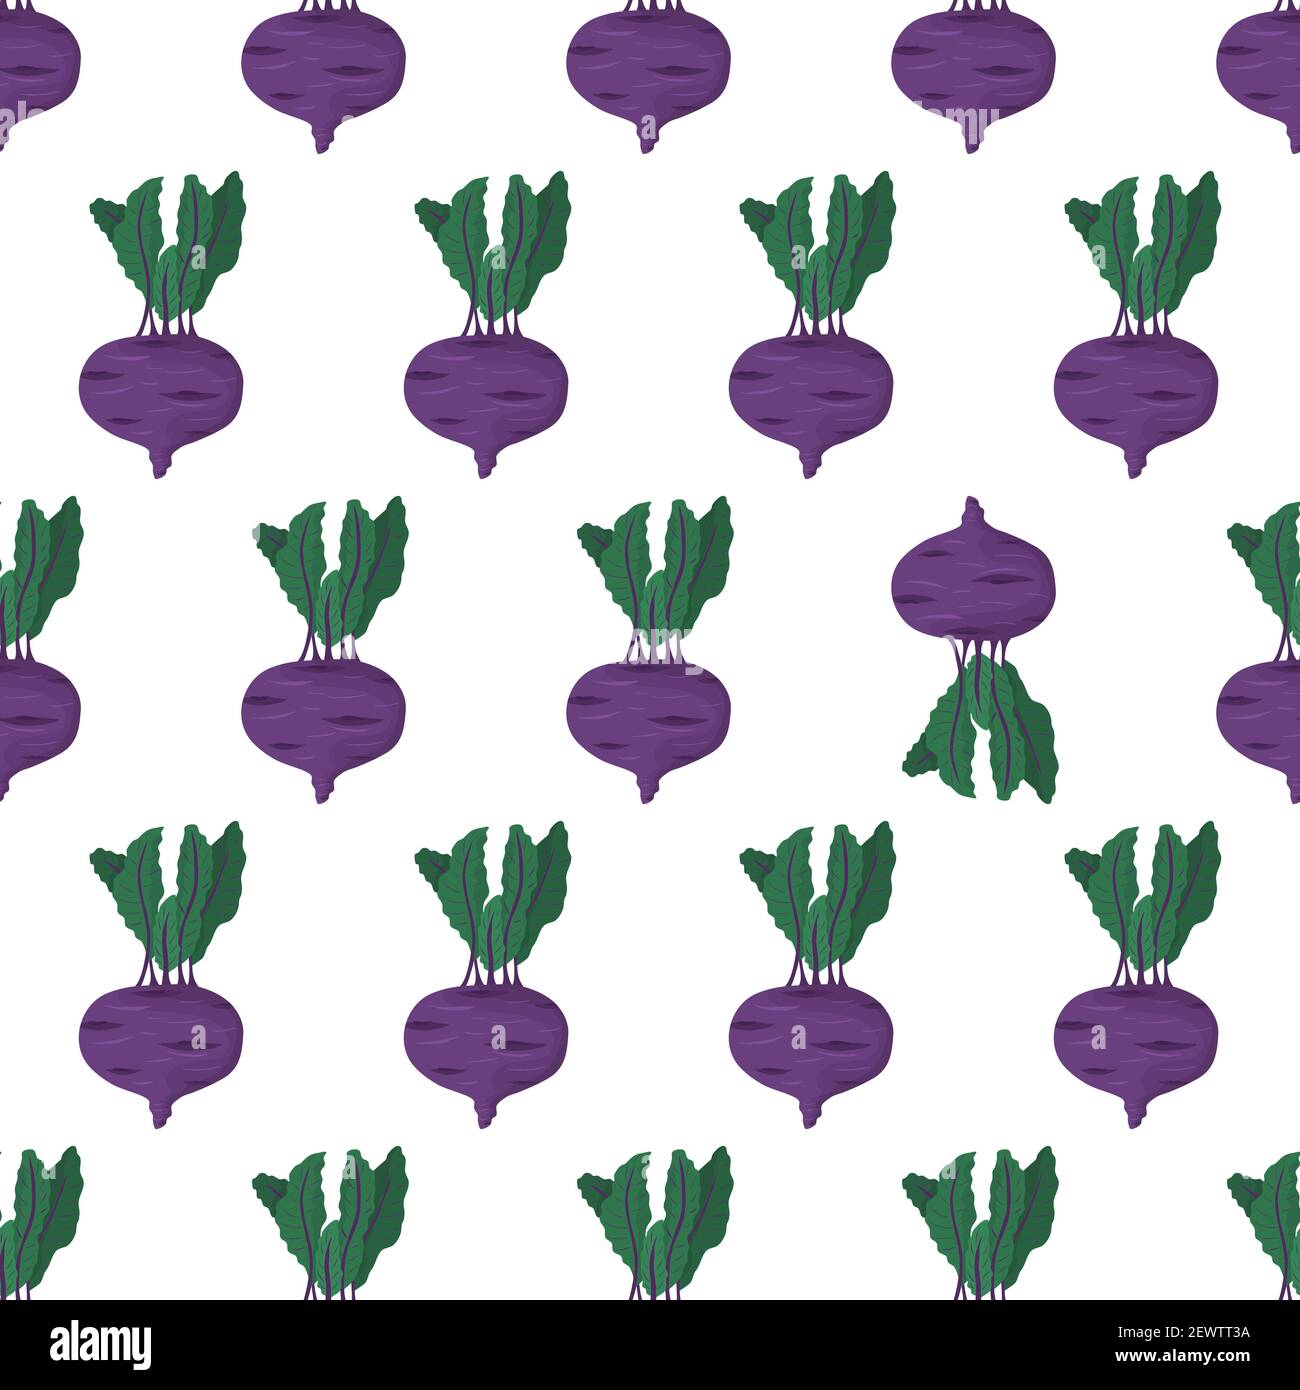 Cartoon nahtlose Muster für Papier-Design mit lila Kohlrabi Wurzel mit grünem Blatt. Farbenfroher Hintergrund. Auffälliges Element - invertiertes Gemüse. Stock Vektor